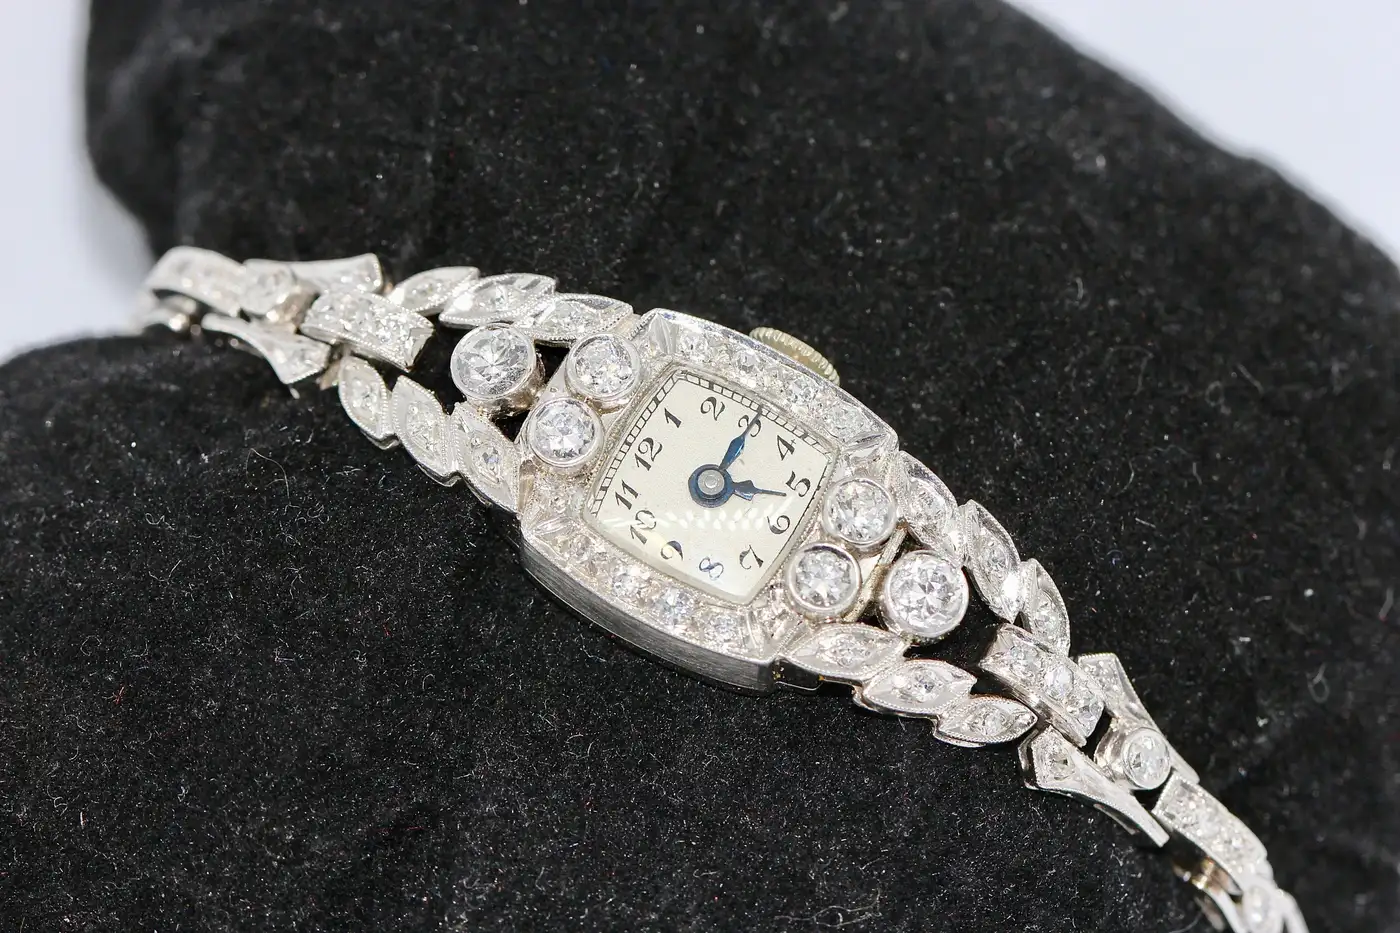 Antique-Art-Nouveau-Ladies-Wrist-Watch-Platinum-with-Diamonds-4.webp